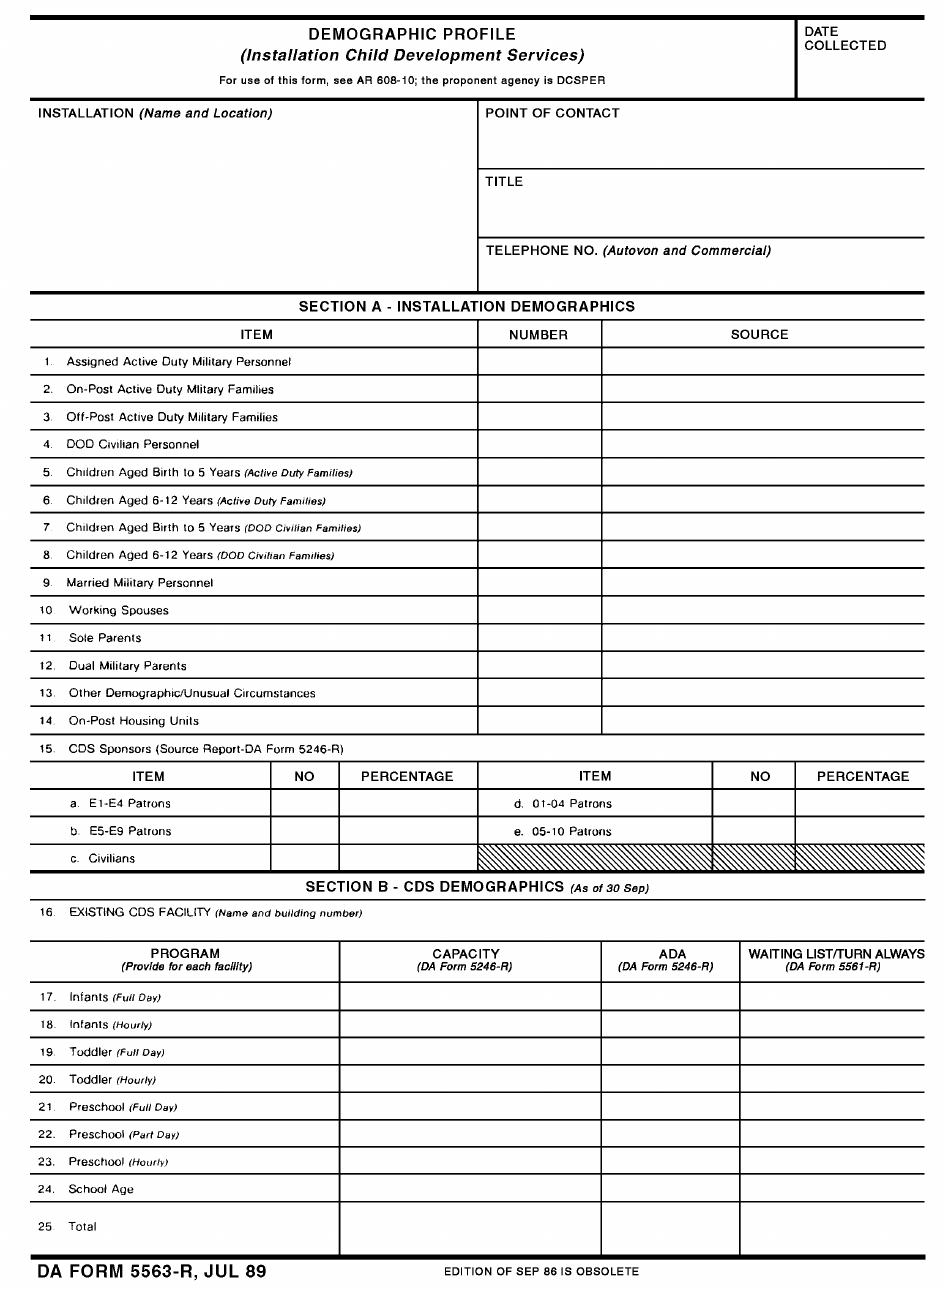 DA Form 5563-R Demographic Profile, Page 1